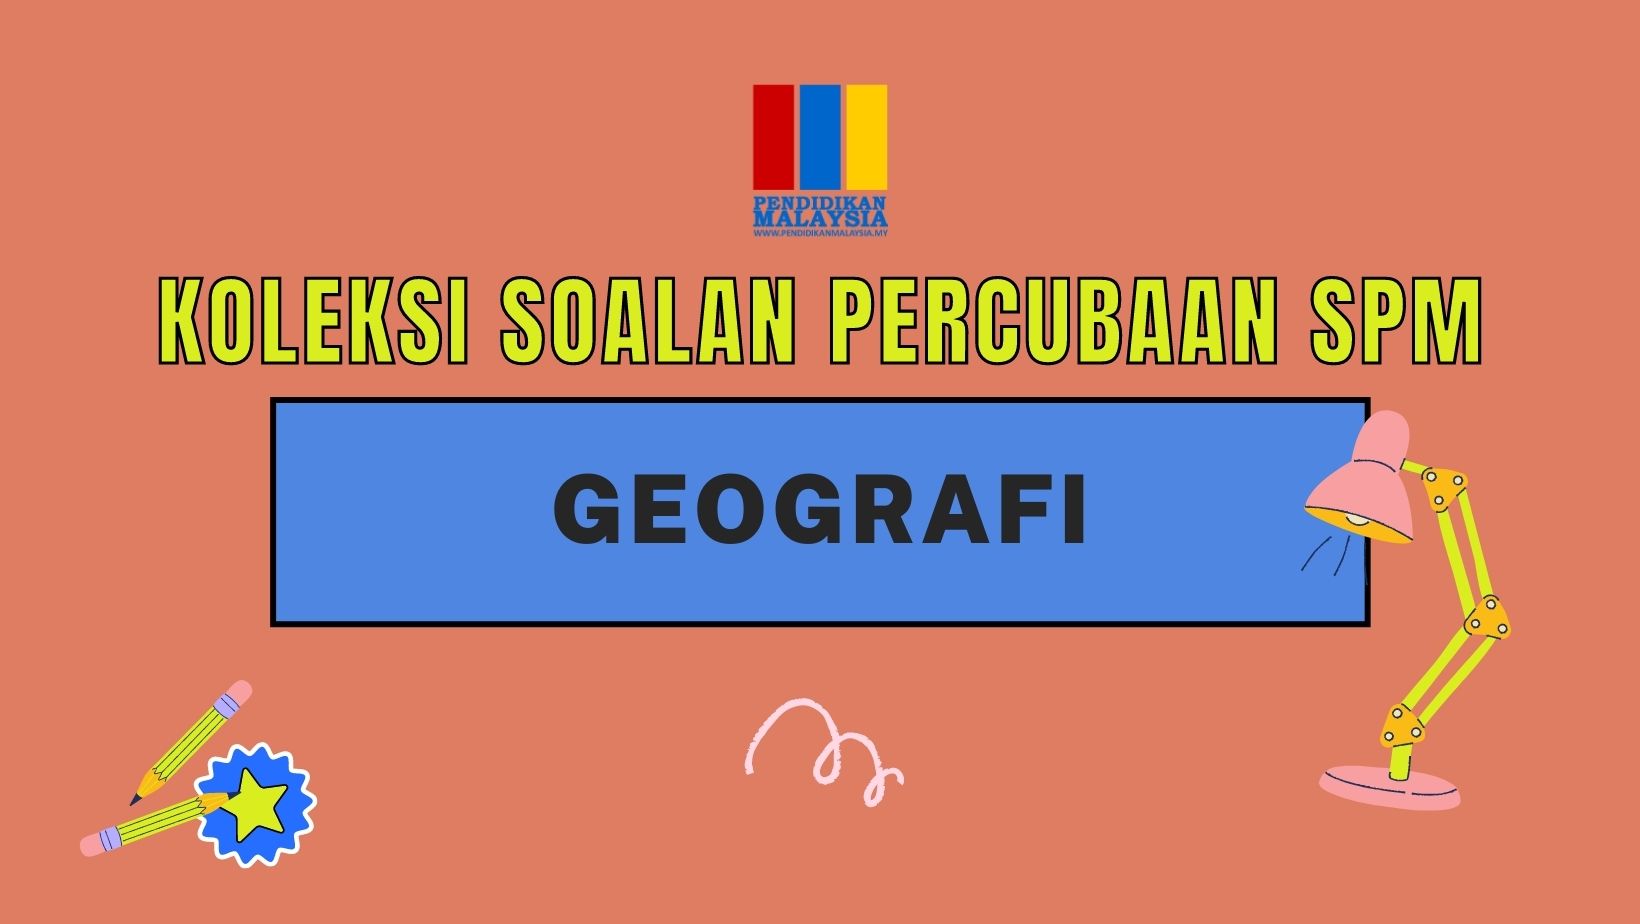 Koleksi soalan percubaan SPM Geografi  PendidikanMalaysia.my